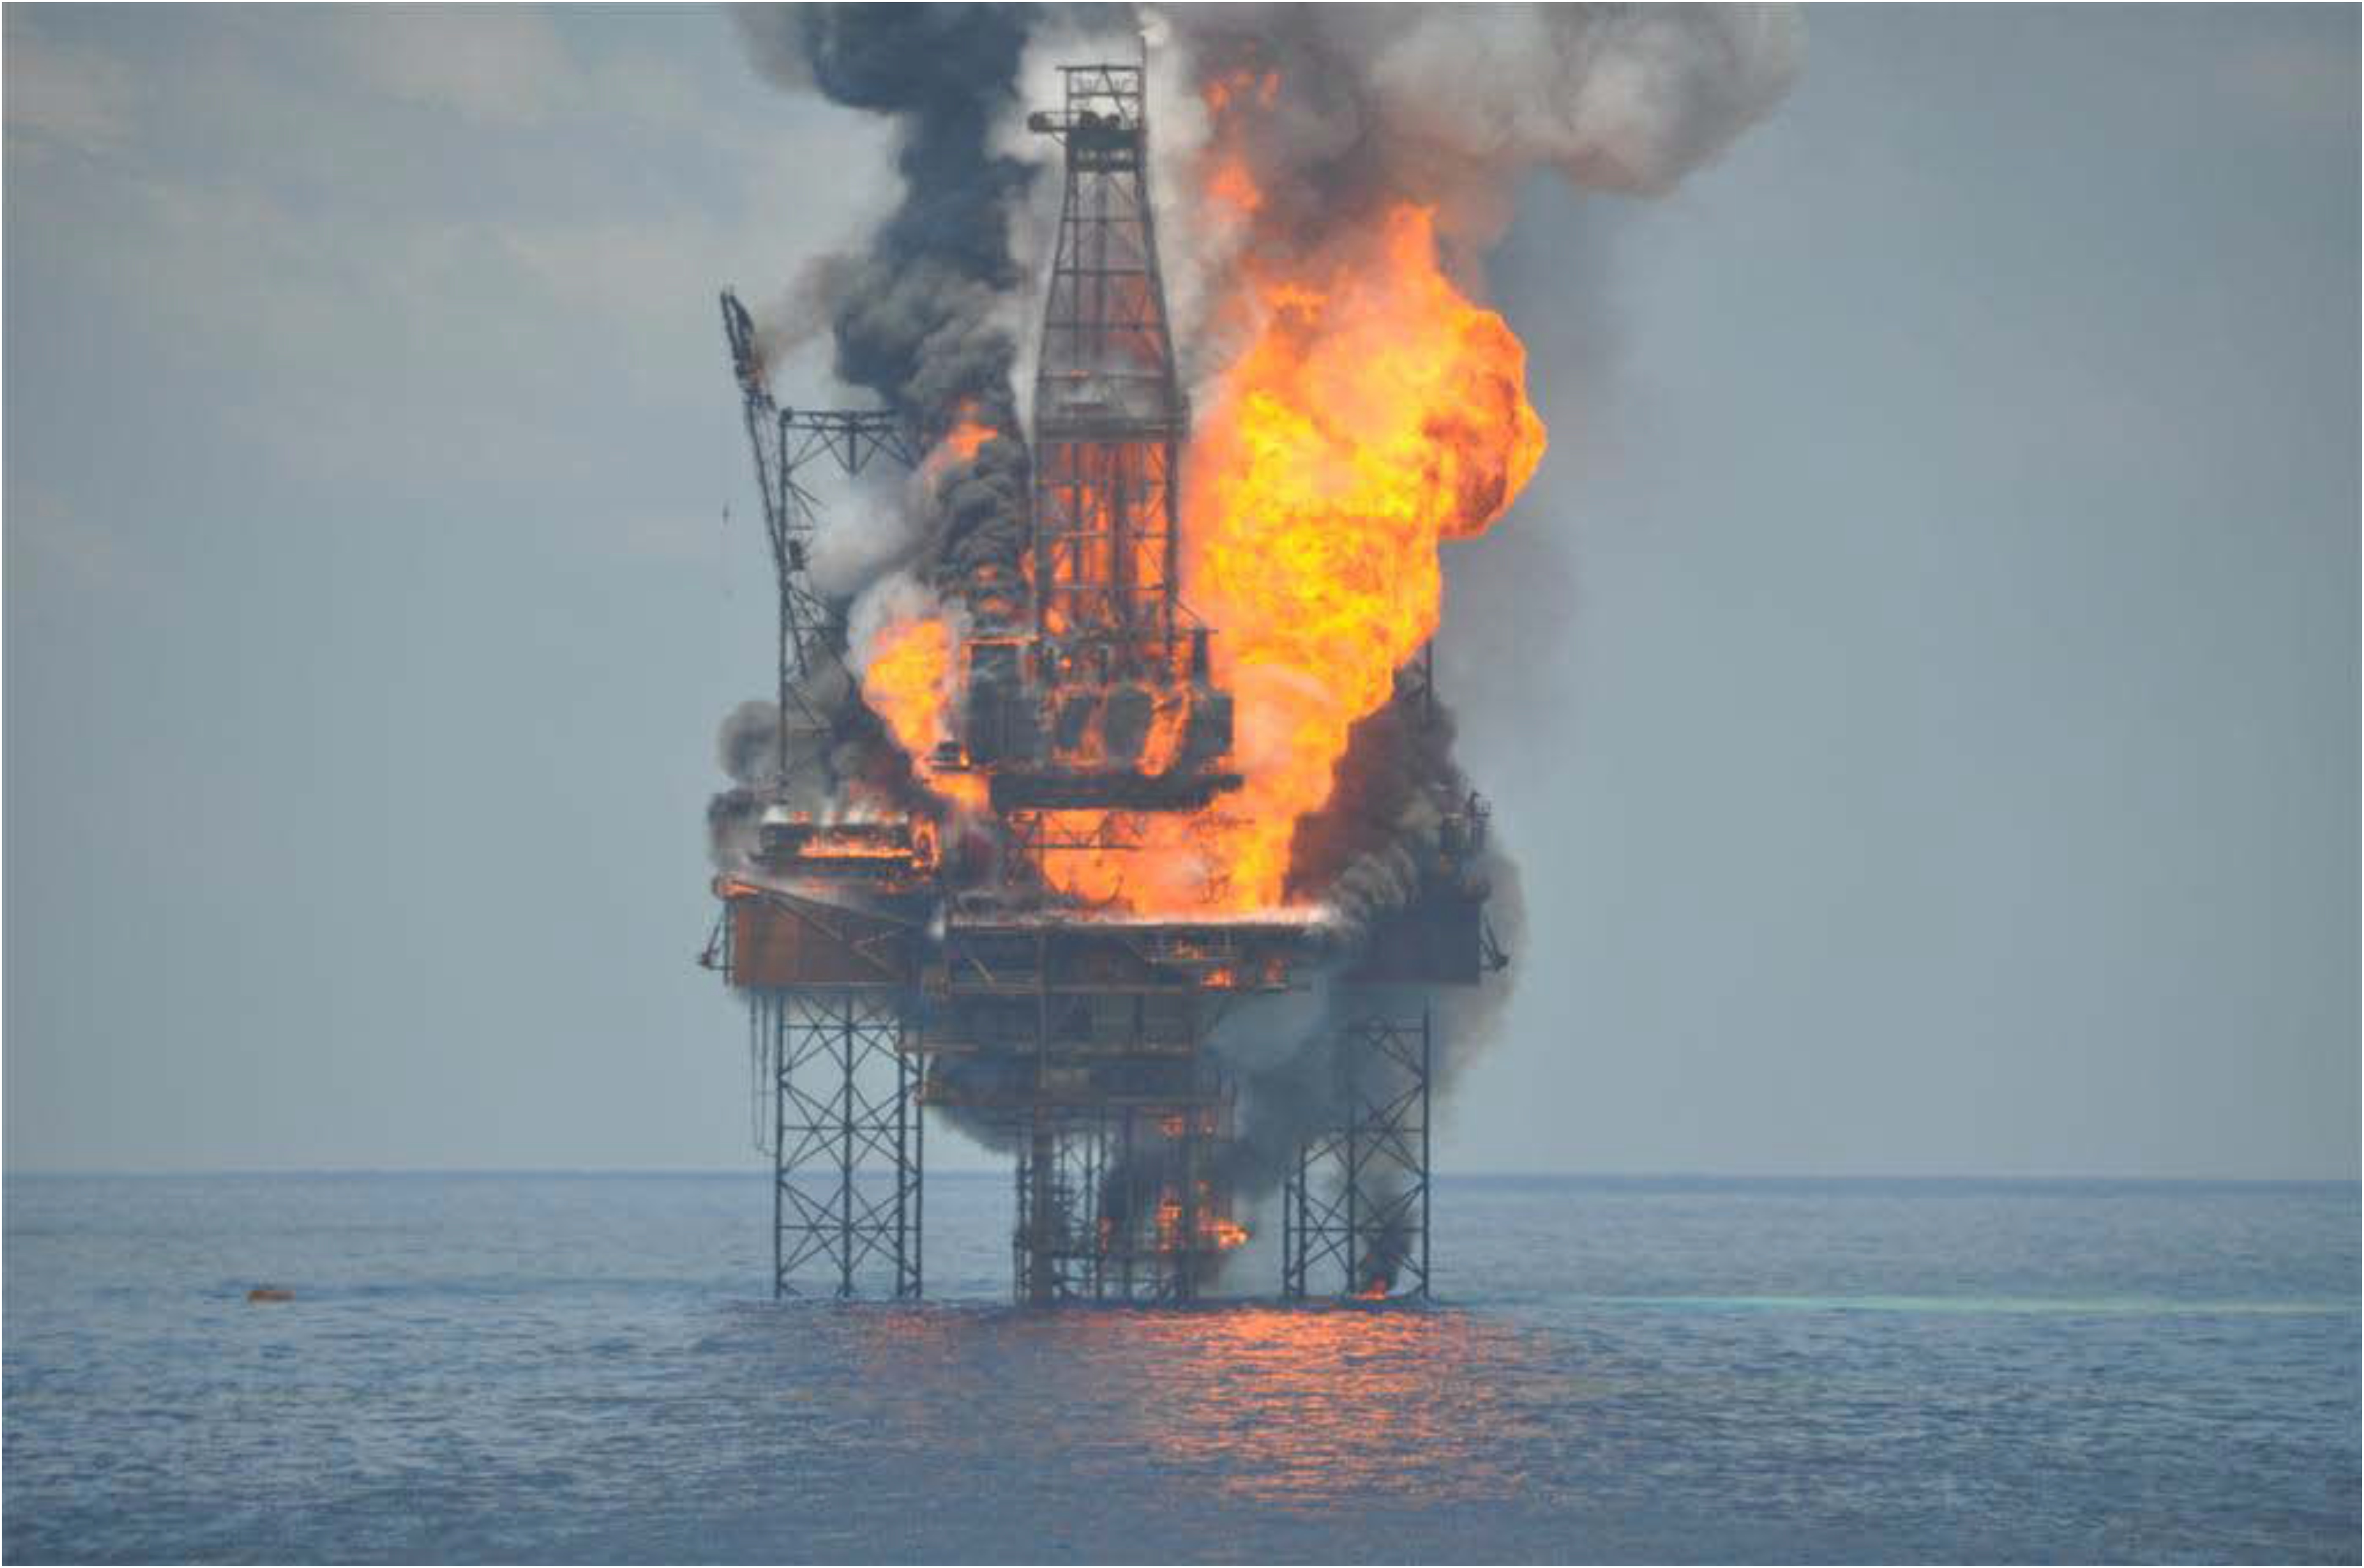 Буровая 2010. Взрыв на нефтяной платформе в мексиканском заливе 2010. Взрыв нефтяной платформы Deepwater Horizon 2010. Взрыв в мексиканском заливе 2010. Взрыв нефтяной платформы Deepwater Horizon - 20 апреля 2010 года.